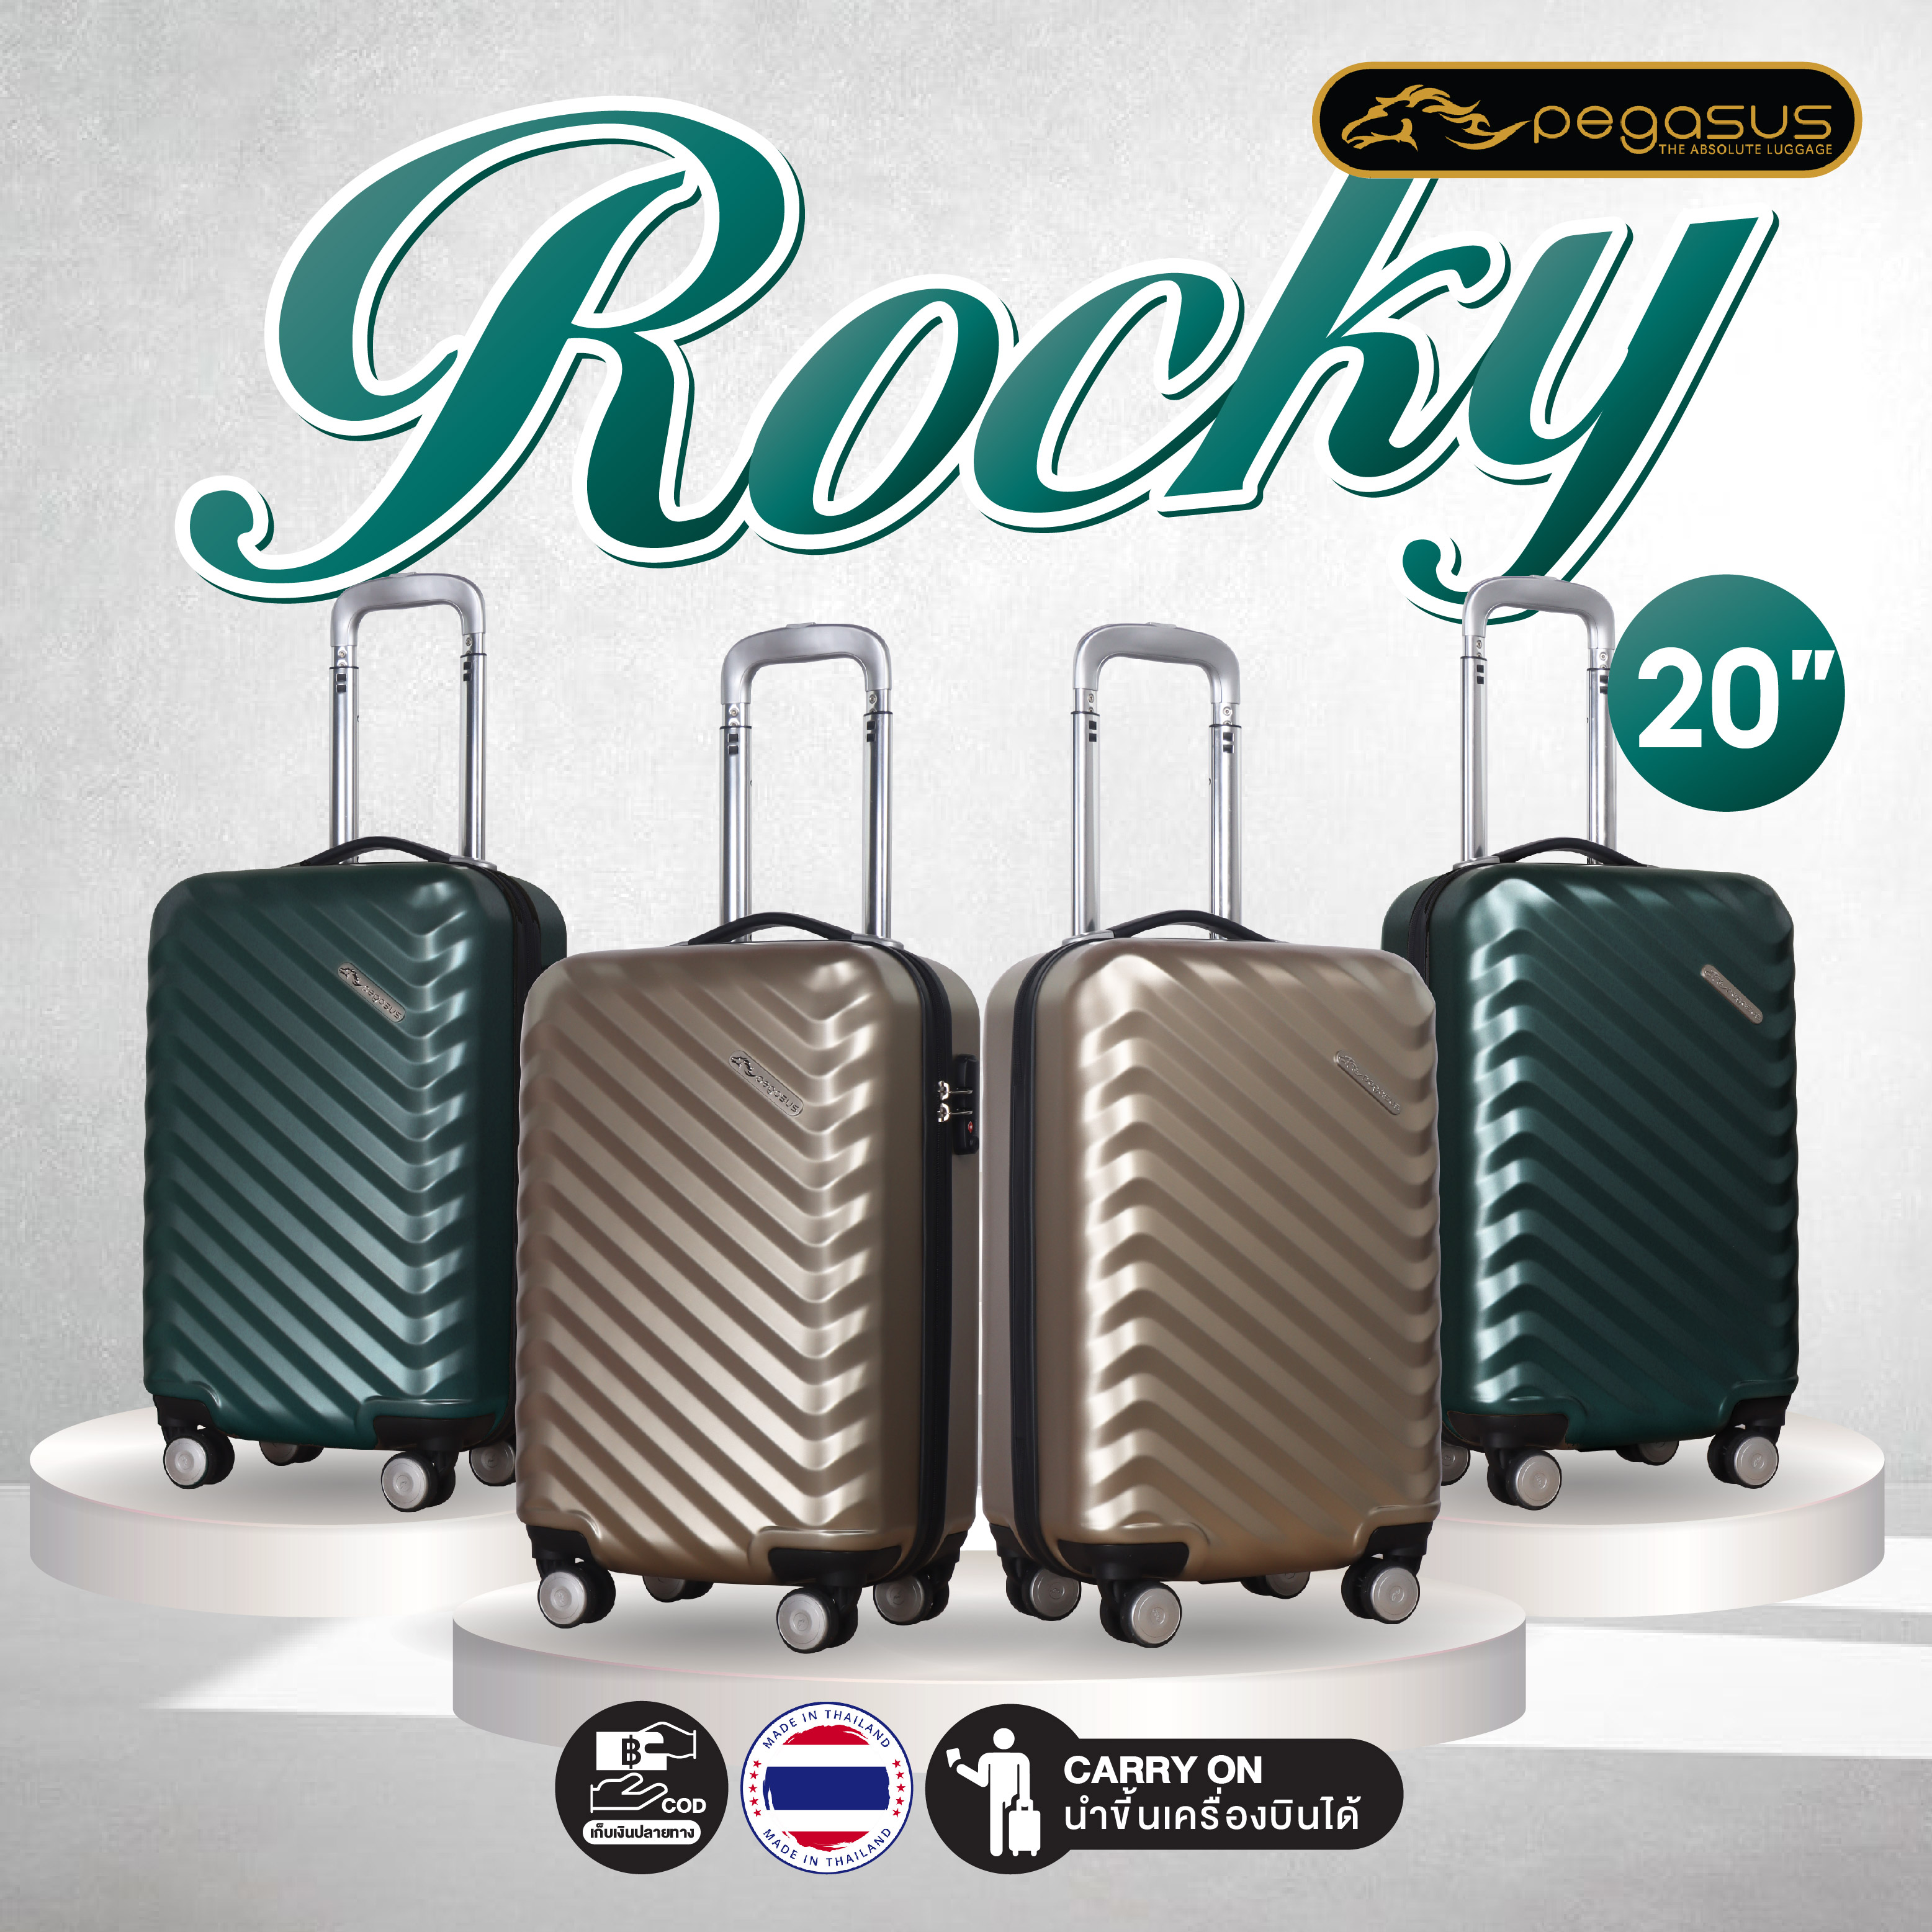 กระเป๋าเดินทางล้อลาก ขนาด 20 นิ้ว รุ่น Rocky สีเขียว รุ่นใหม่ล่าสุด